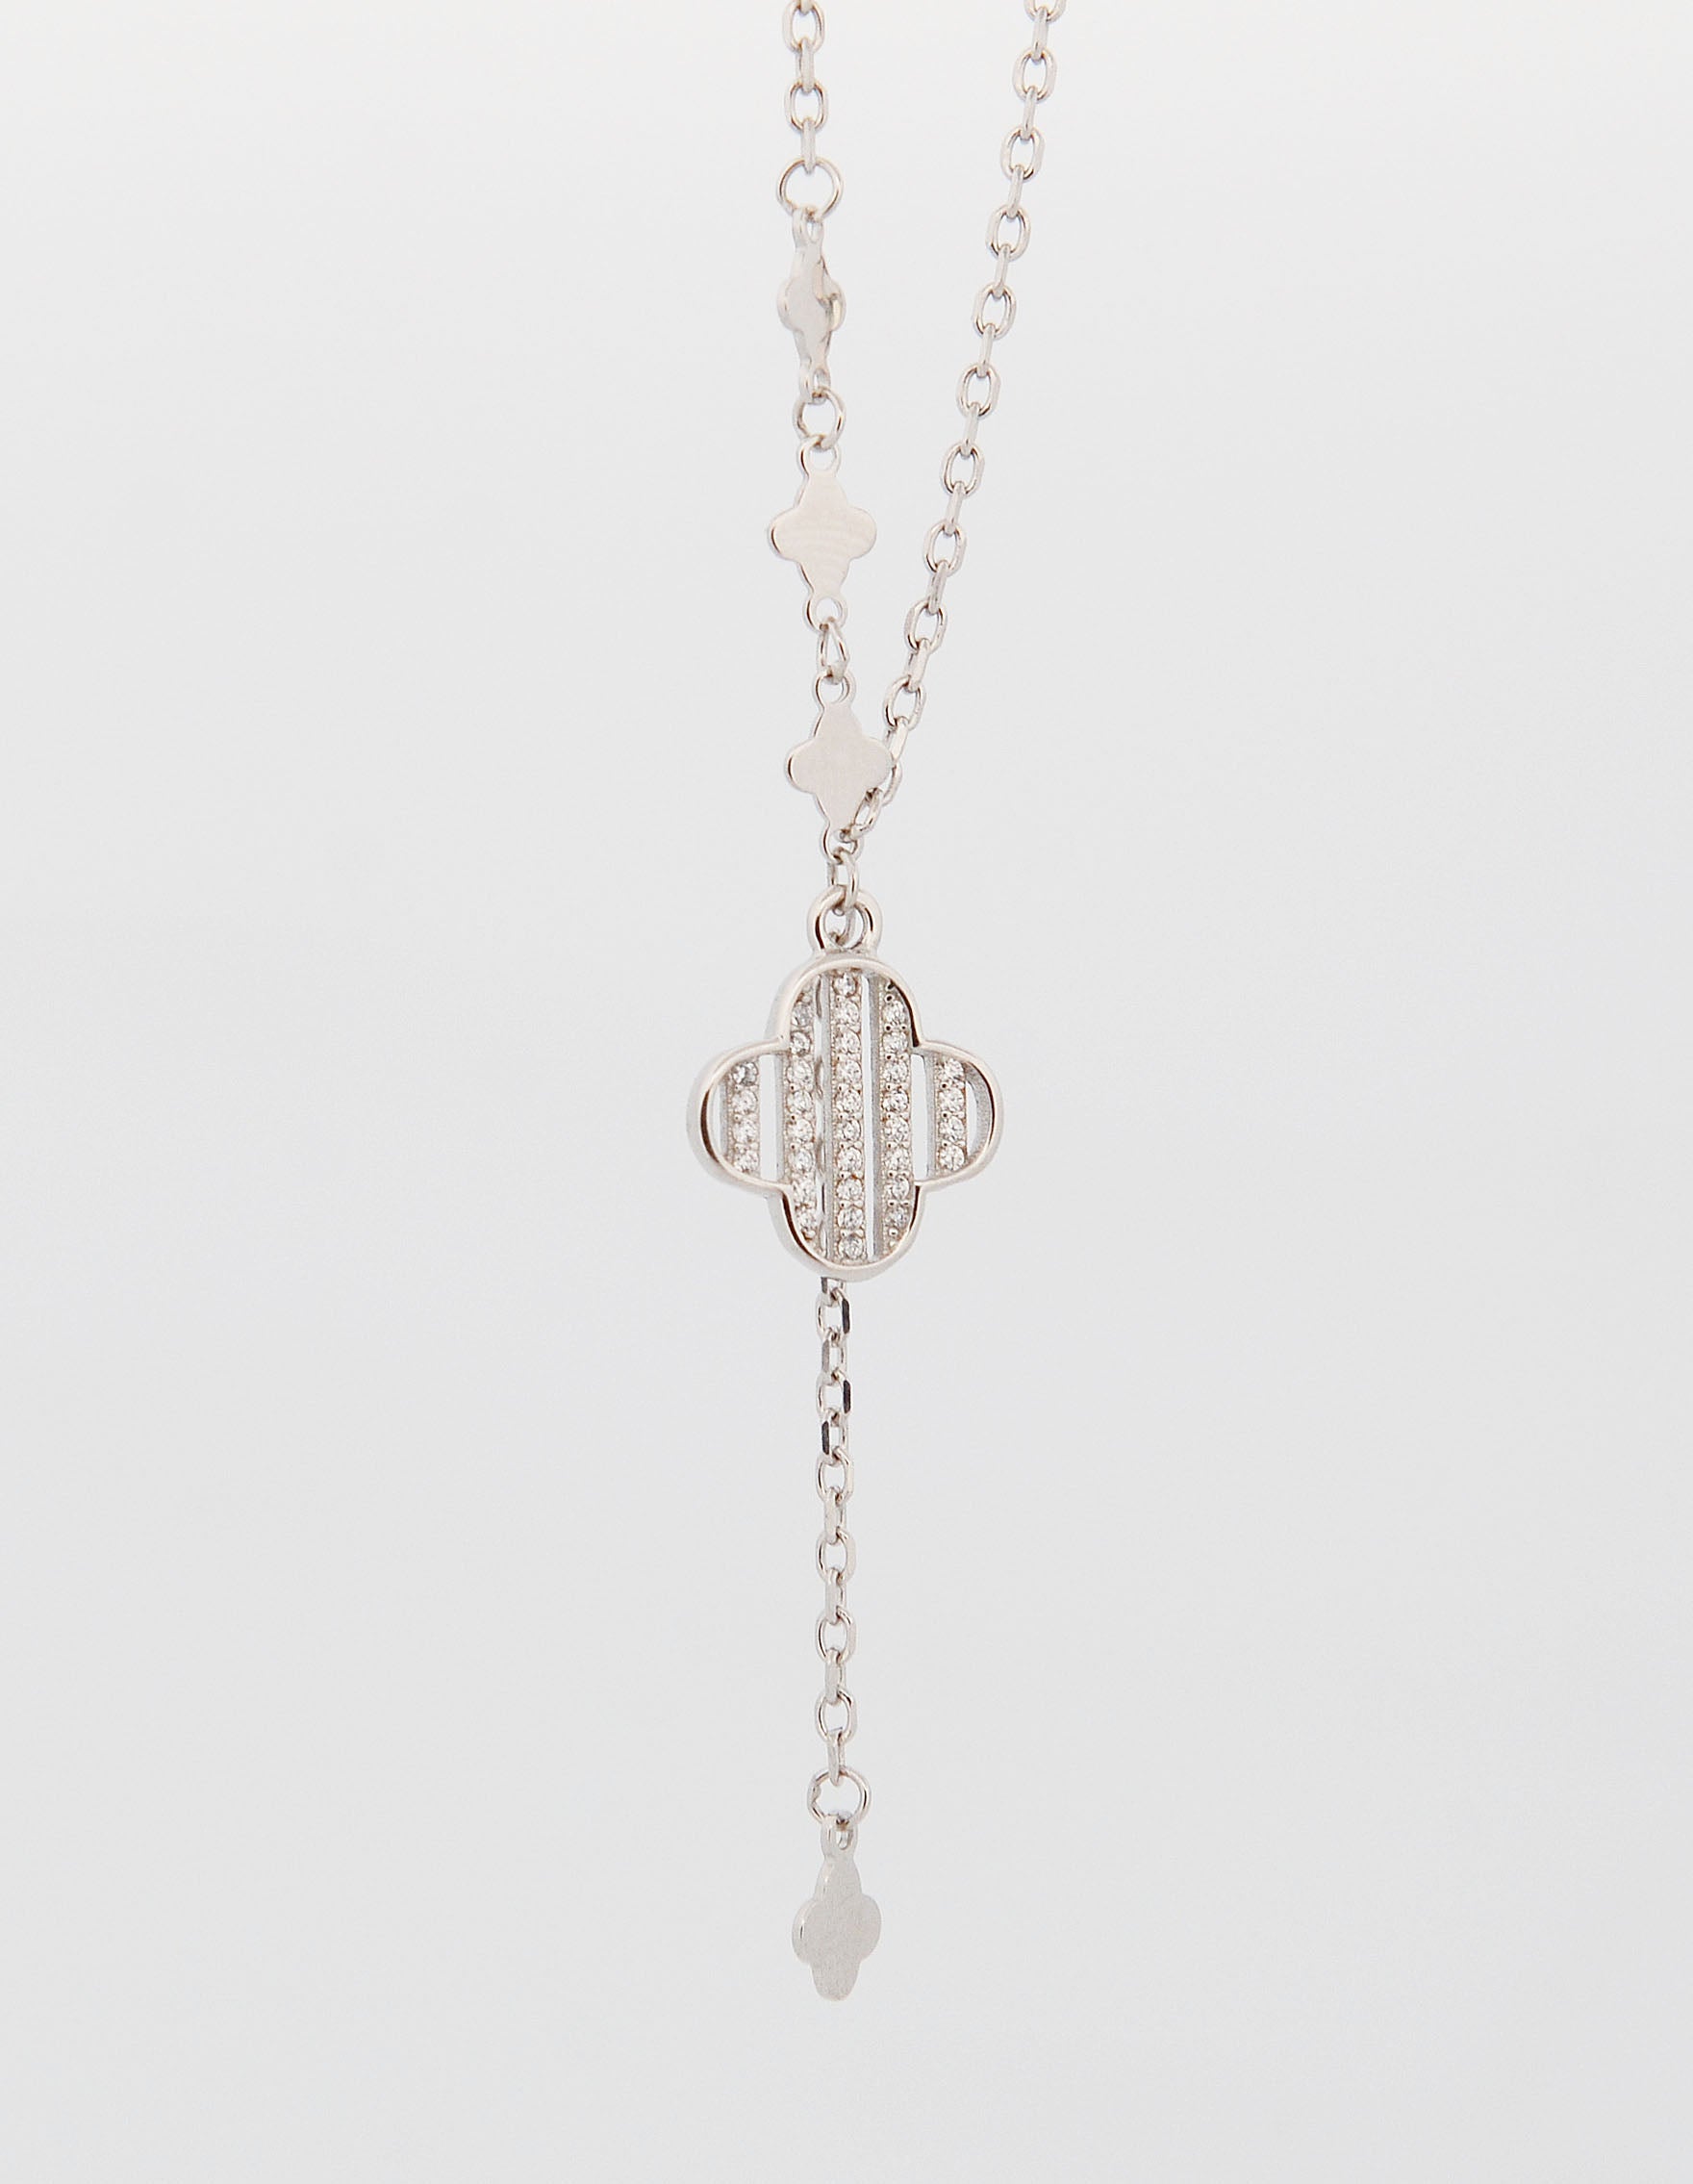 Stříbrný náhrdelník s přívěskem ve stylu Art Deco